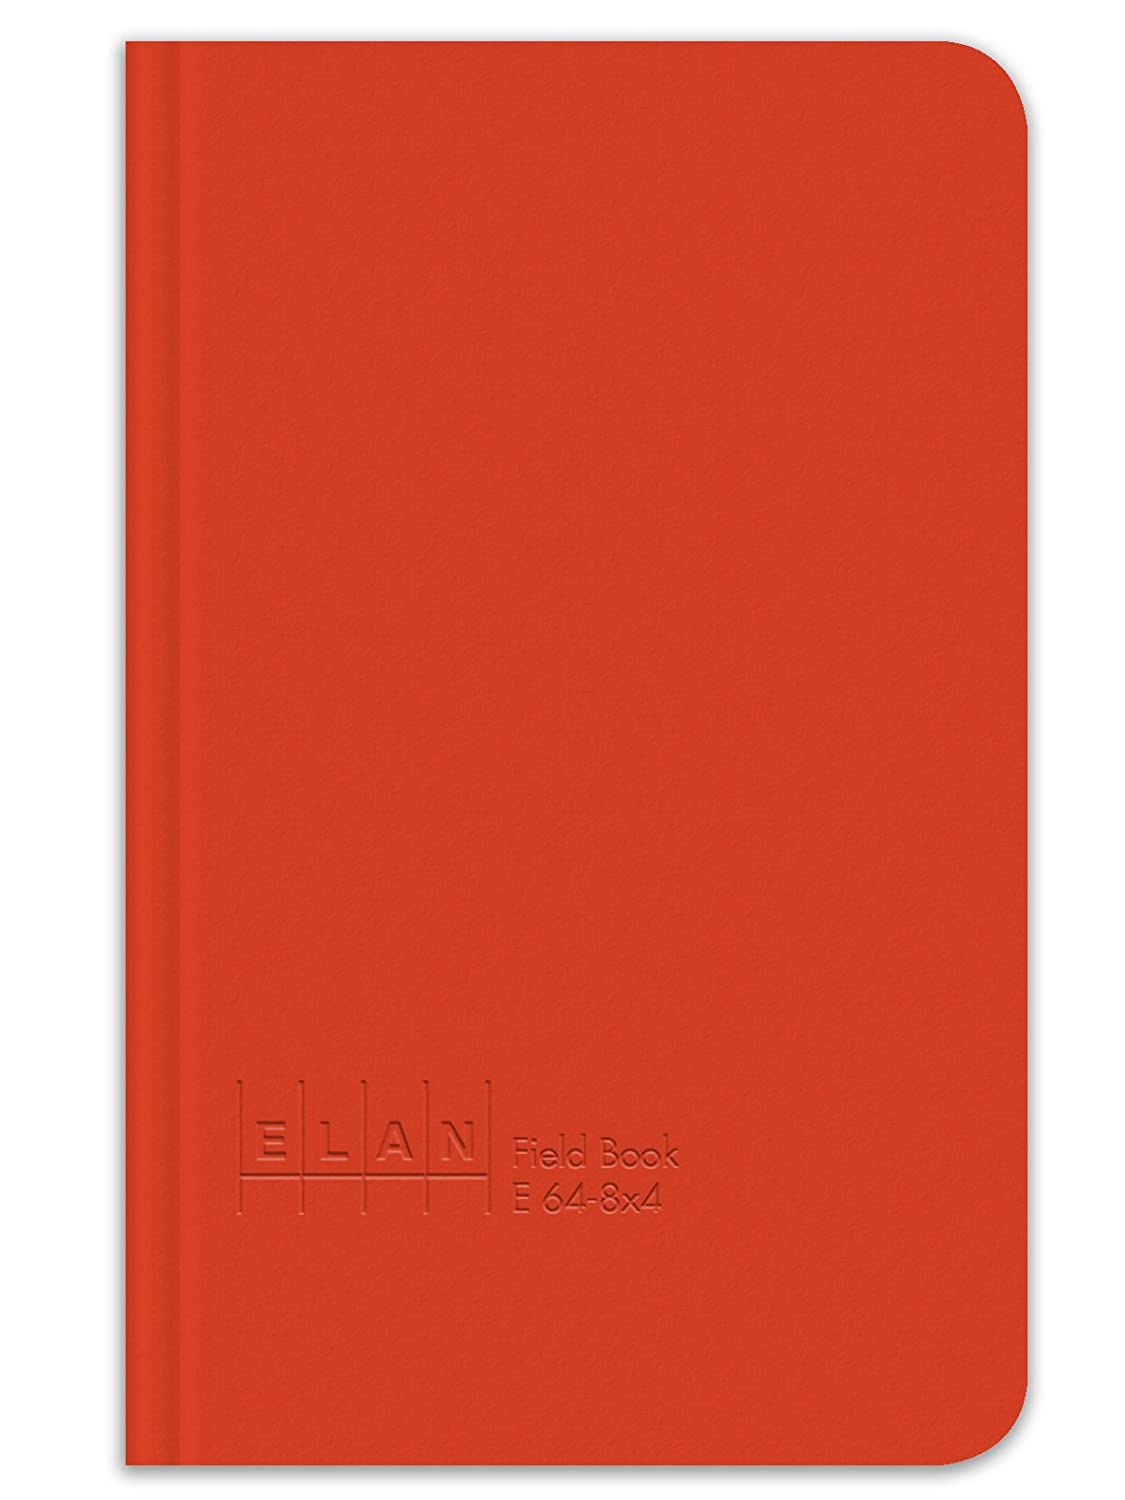 Elan Publishing E64-8x4 Field Book